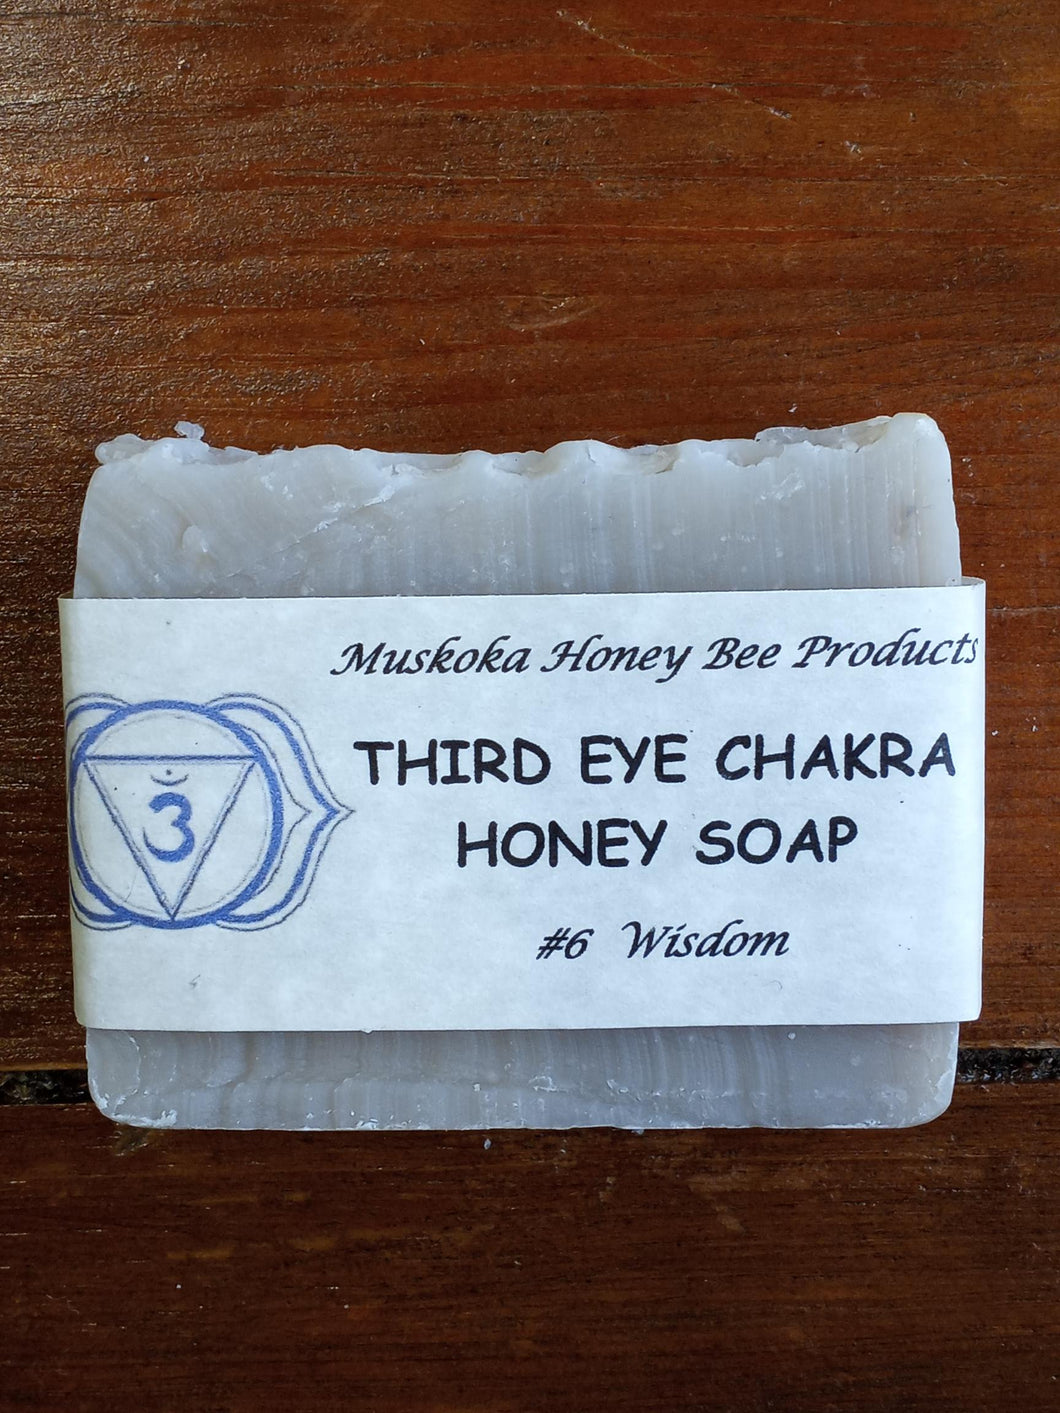 #6 - Third Eye Chakra Honey Soap (Wisdom)